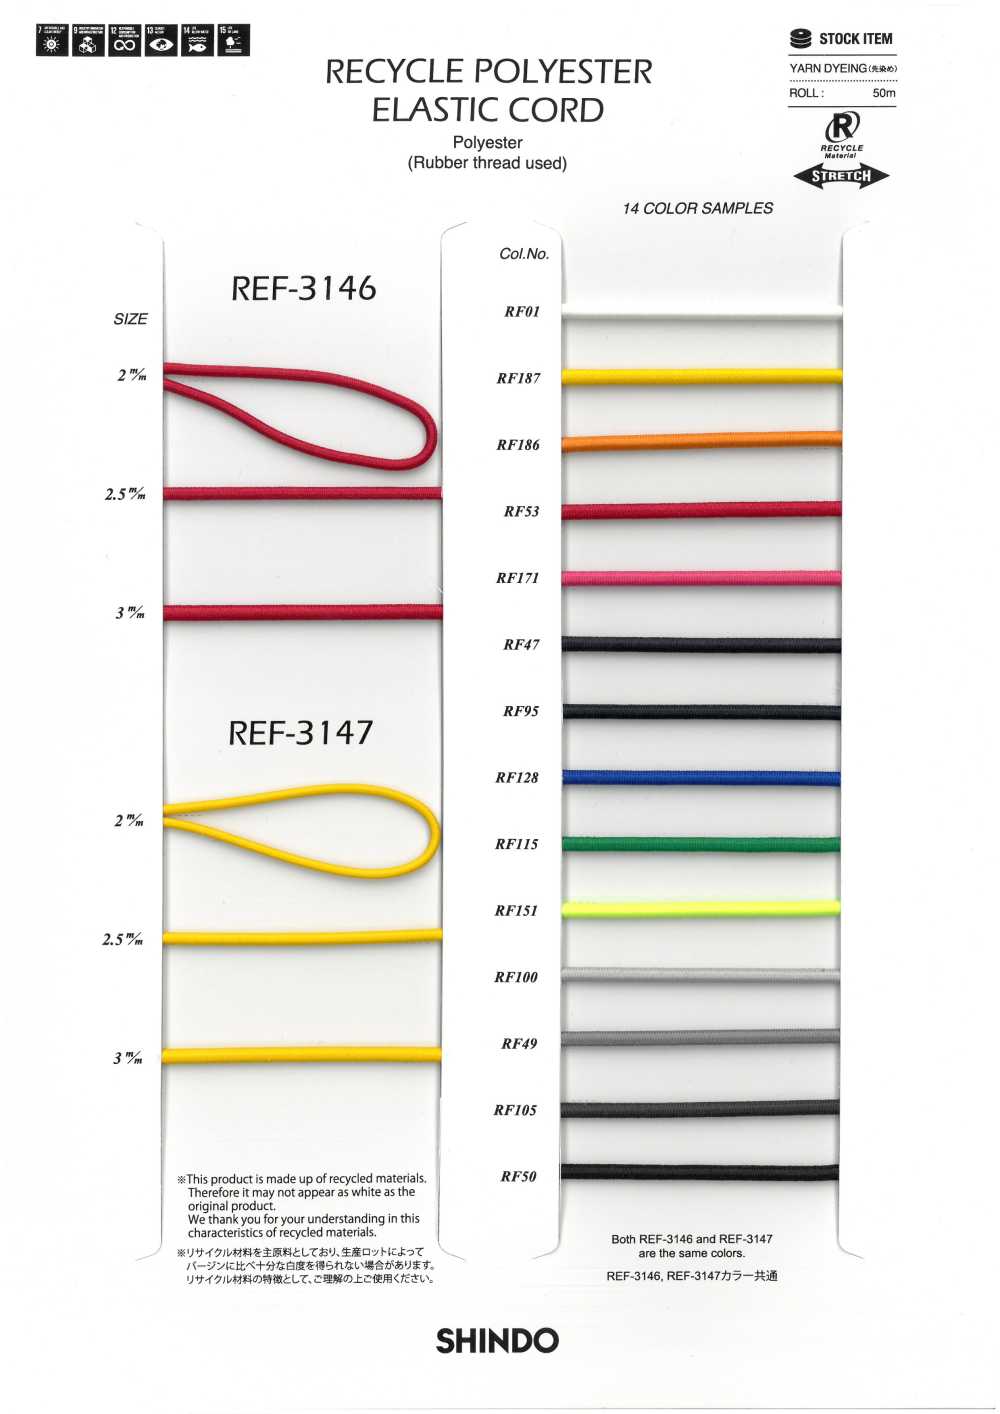 REF-3146 Cordón Elástico De Poliéster Reciclado (Tipo Blando)[Cordón De Cinta De Cinta] SHINDO(SIC)